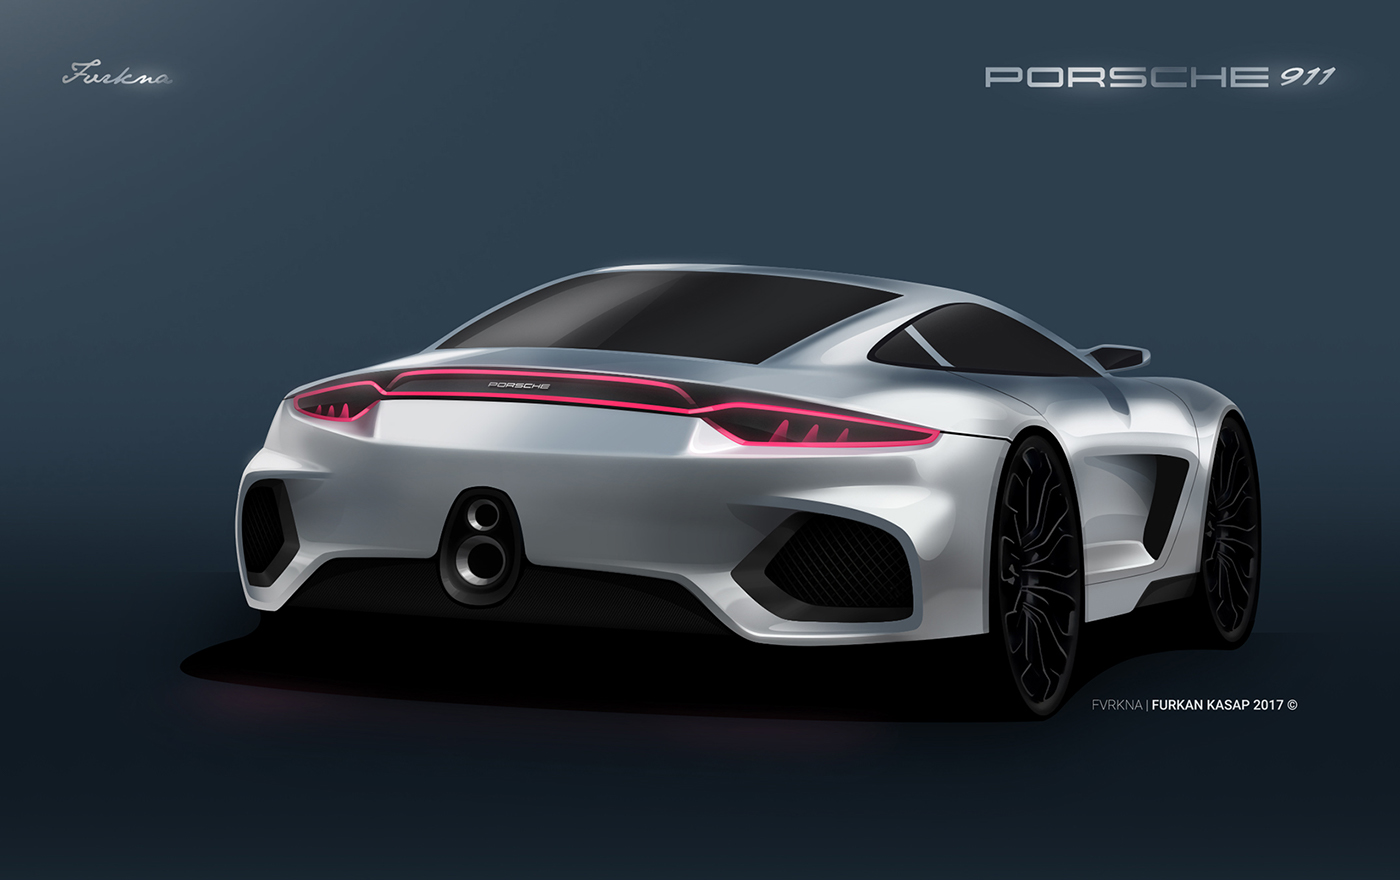 Sketch Porsche Design Proposal on Behance